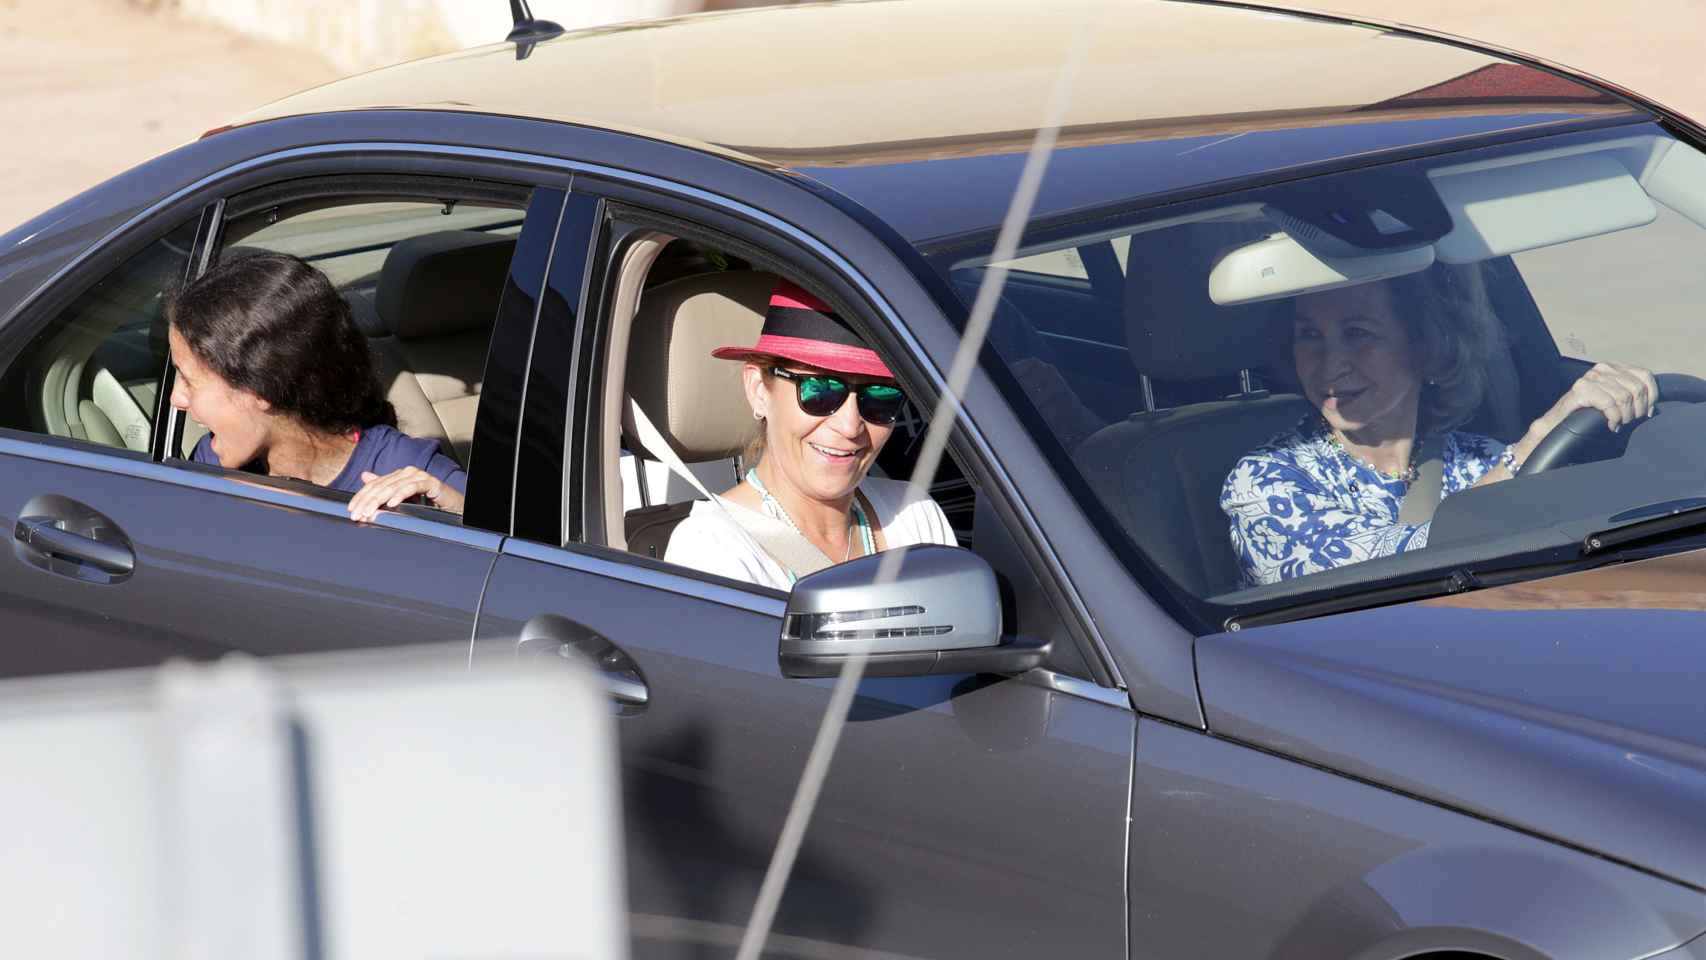 La reina Sofía, la infanta Elena y Victoria Federica en una imagen del verano de 2016 en Palma.